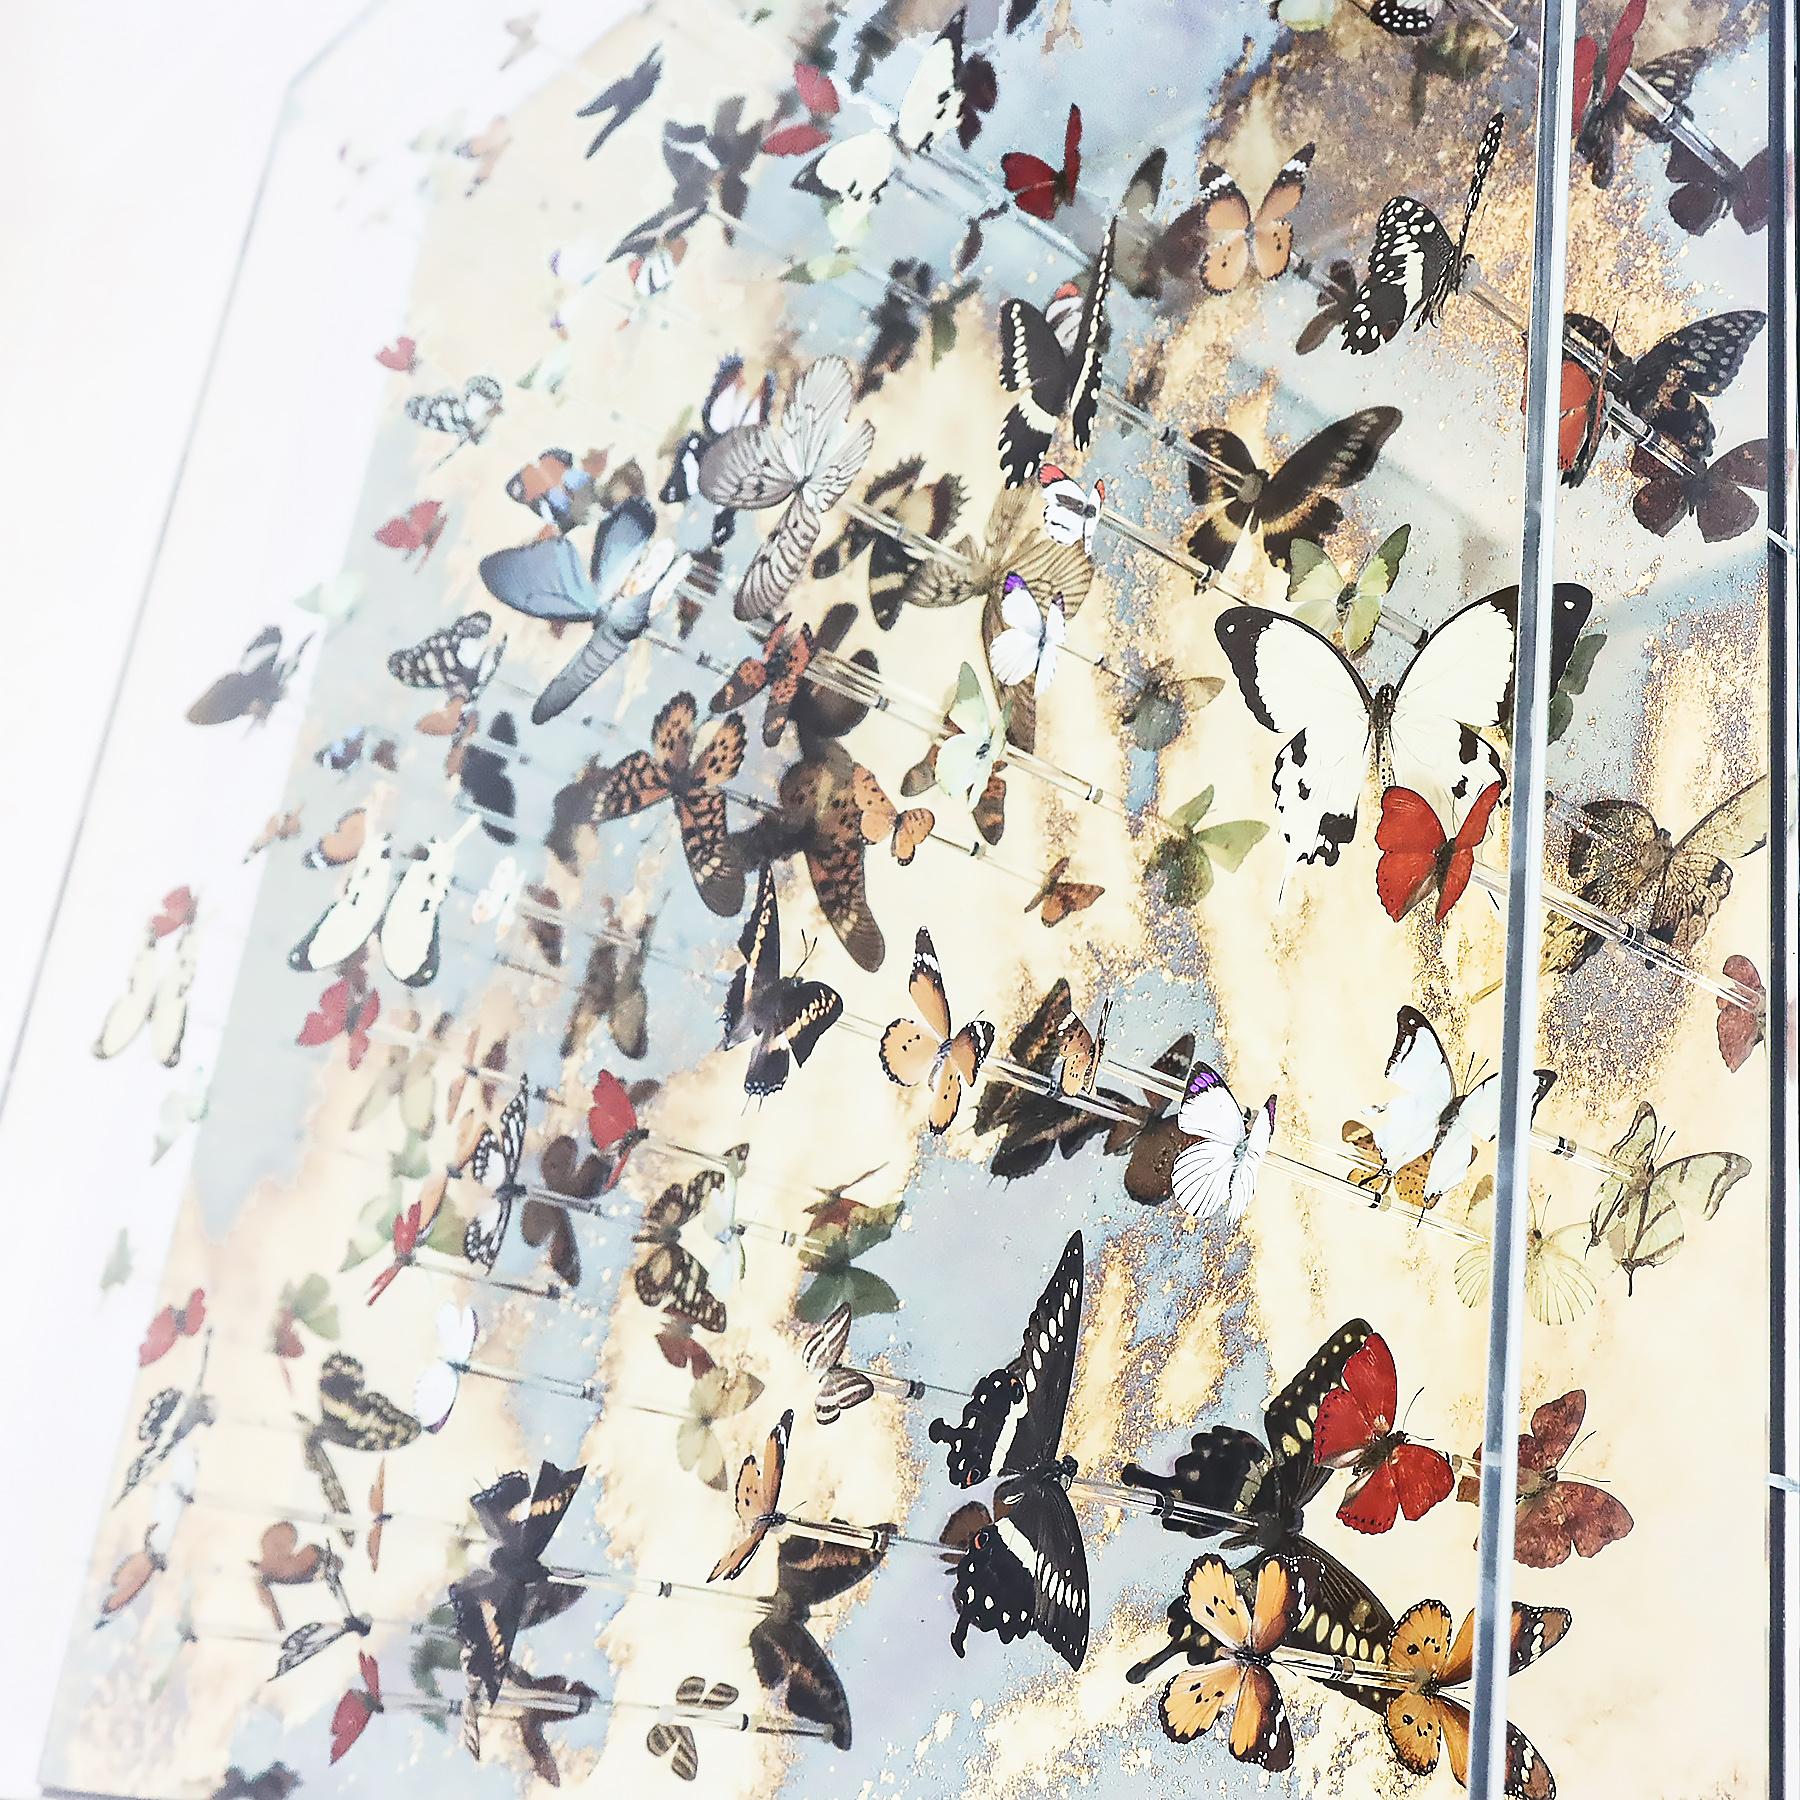 British Unique Nick Jeffrey gold leaf mirrored butterfly installation artwork 